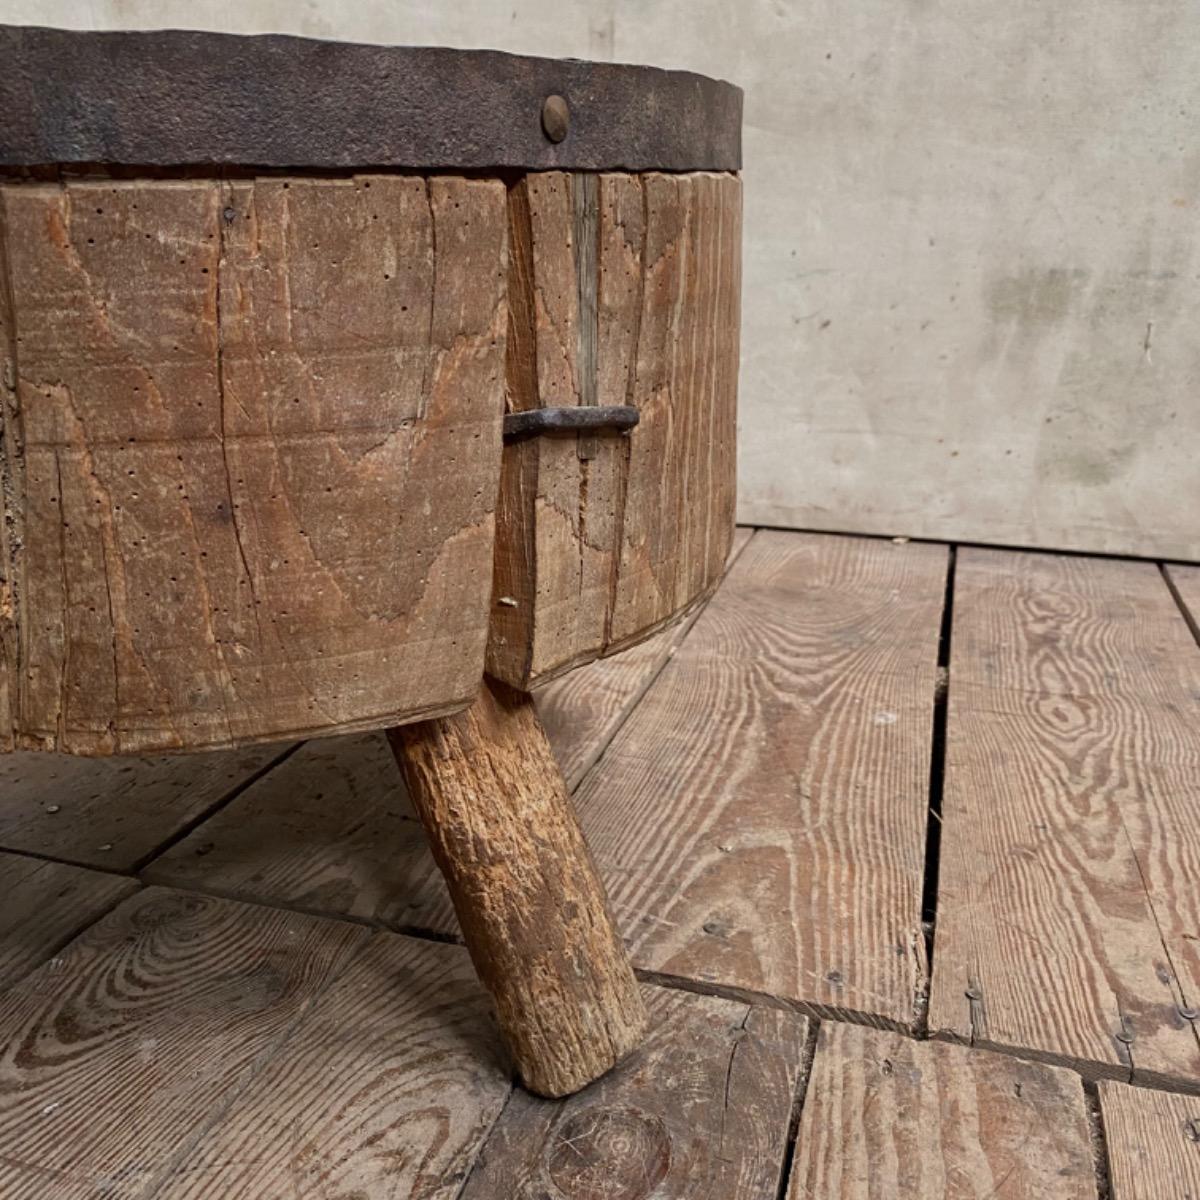 Curious primitive wooden block